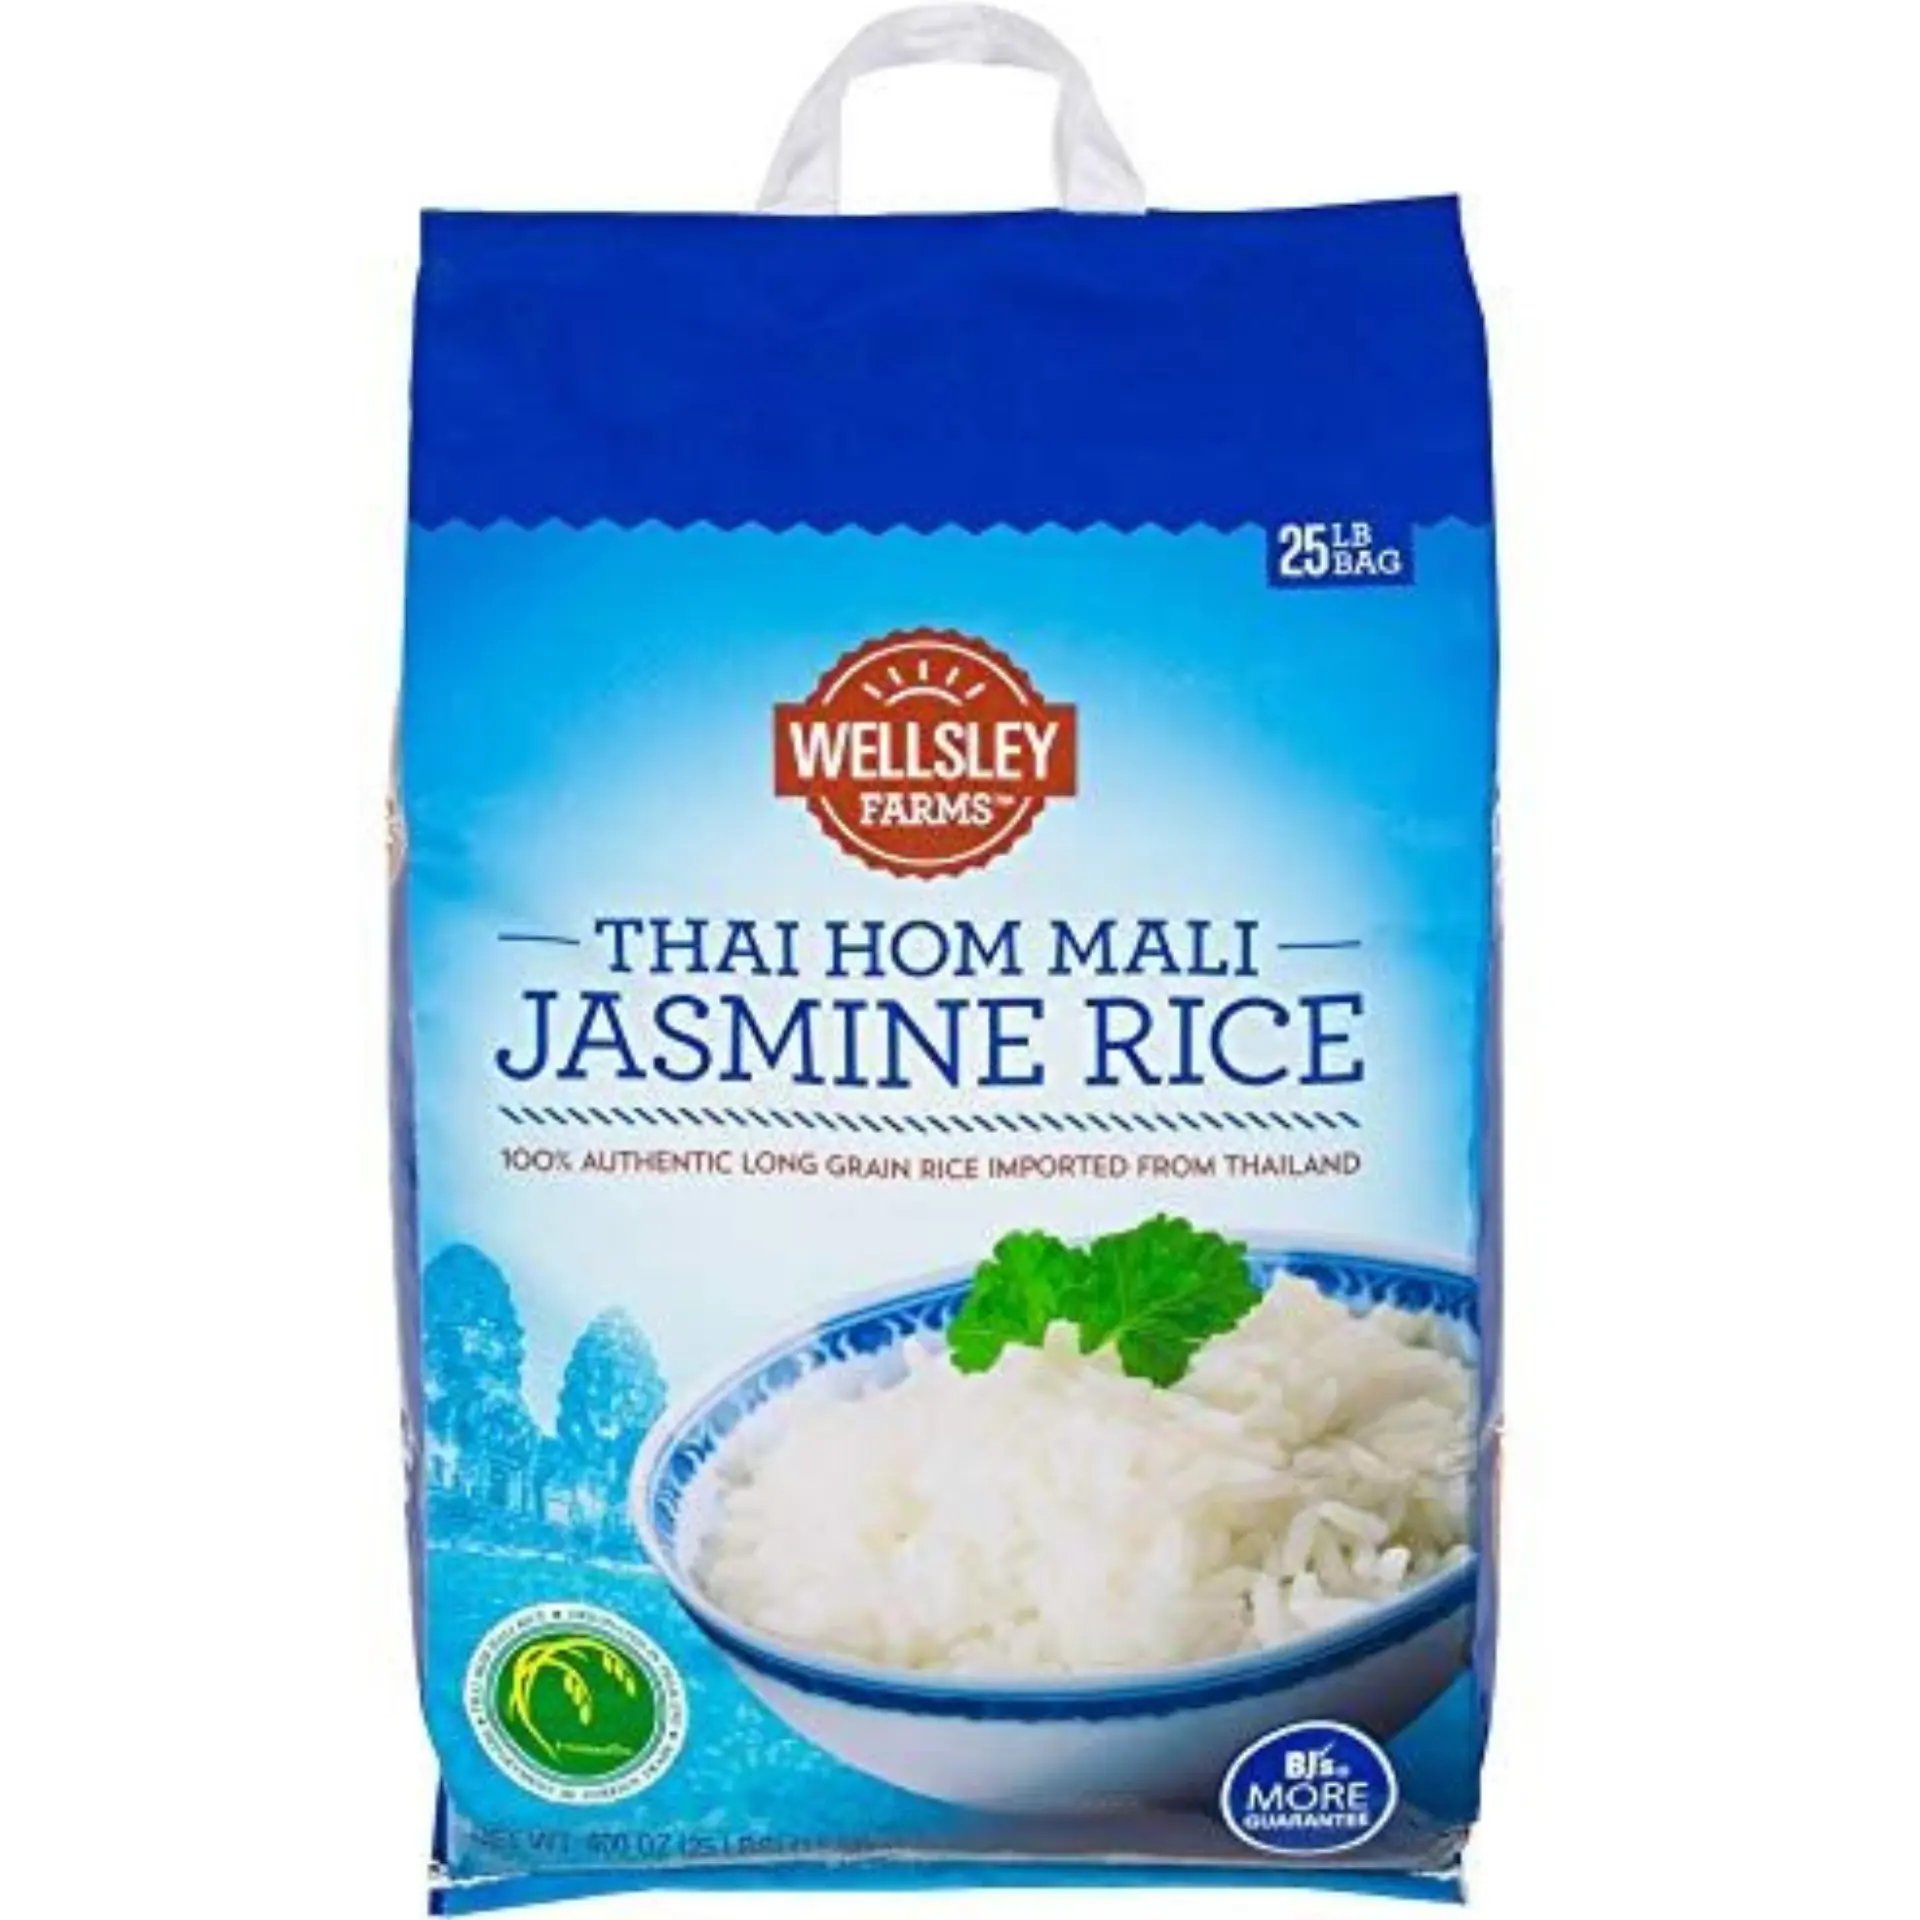 أفضل أرز ياسمين من الأرز الفيتنامي أرز طويل معطر وذو رائحة ذكية بالجملة 5 كجم و10 كجم و25 كجم بالحقيبة، تصدير رخيص بكميات كبيرة